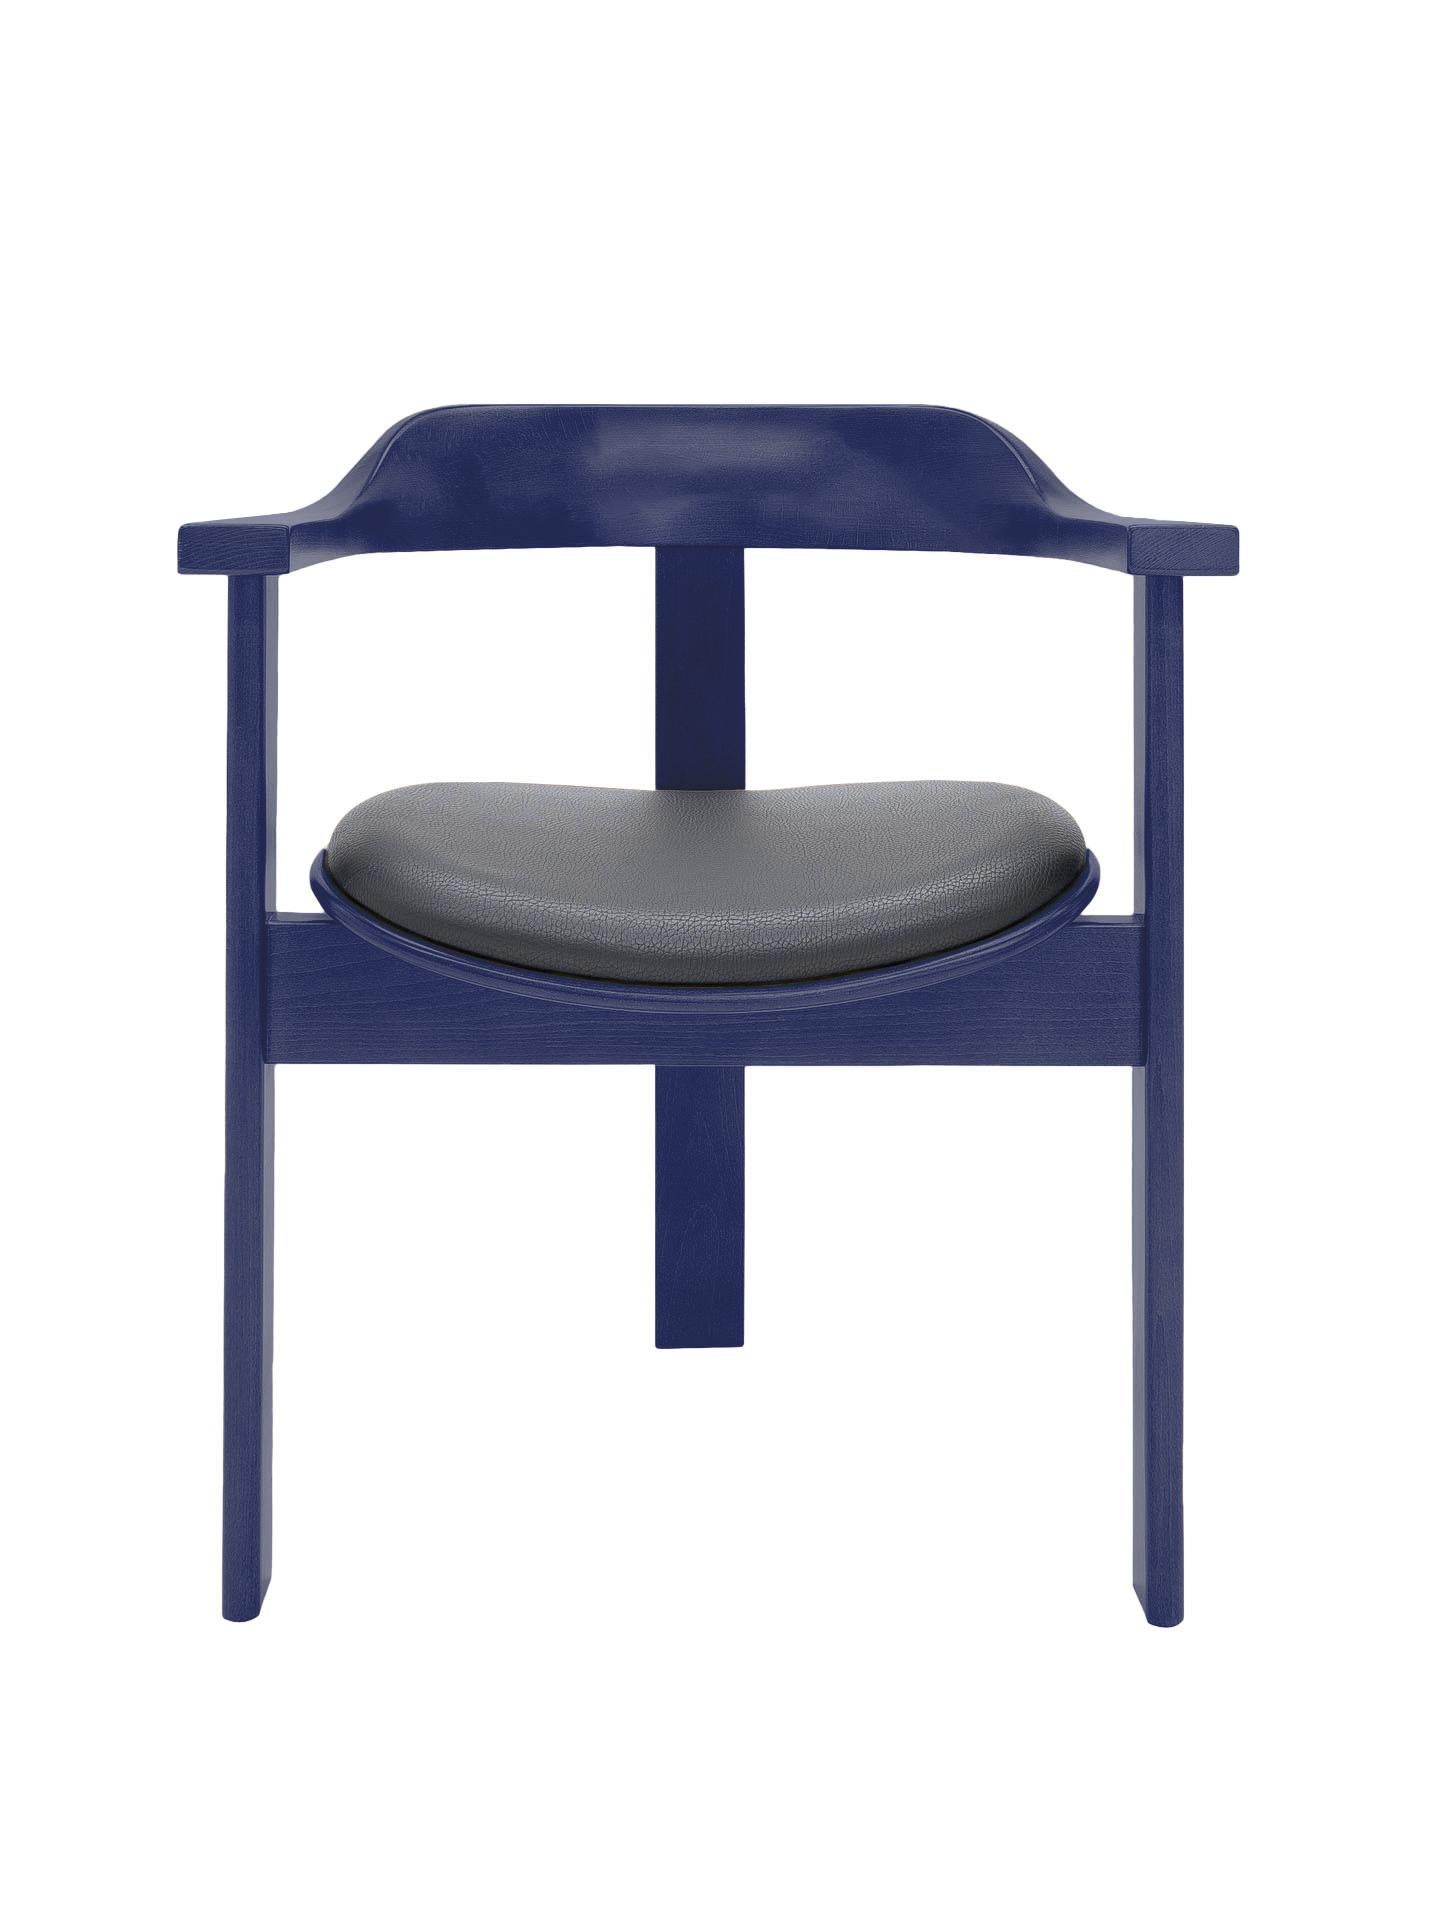 Der Haussmann-Stuhl ist ein lebendiges, zeitloses Stück voller Komfort und Eleganz.

Dieser einzigartige dreibeinige Stuhl hatte seine Premiere auf der 